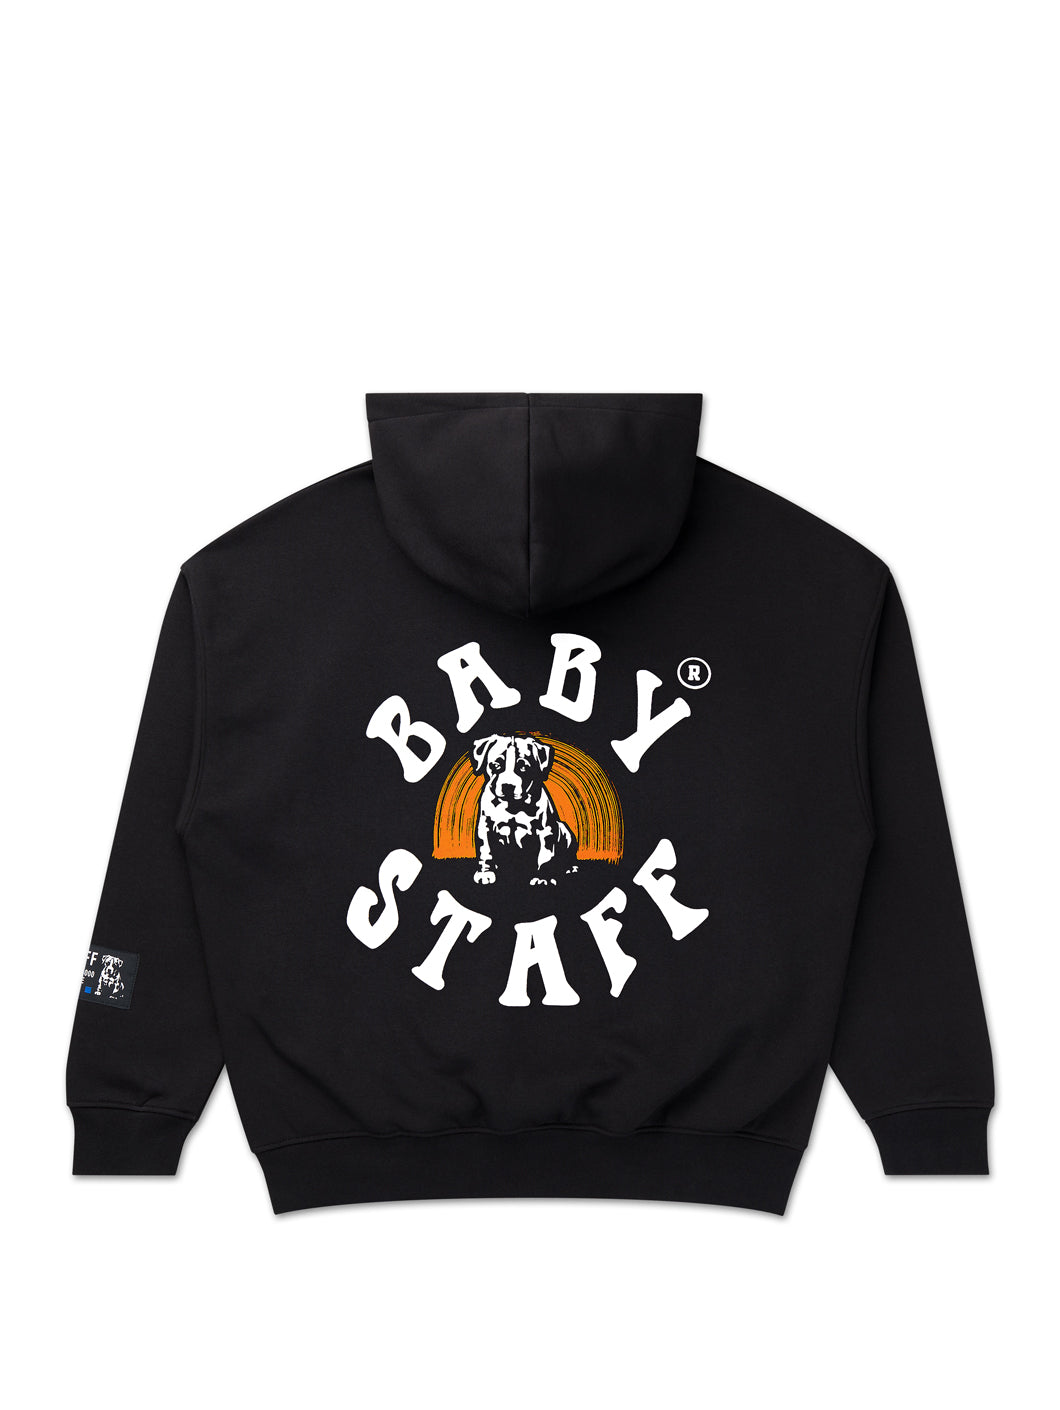 babystaff senya oversized hoodie - 17